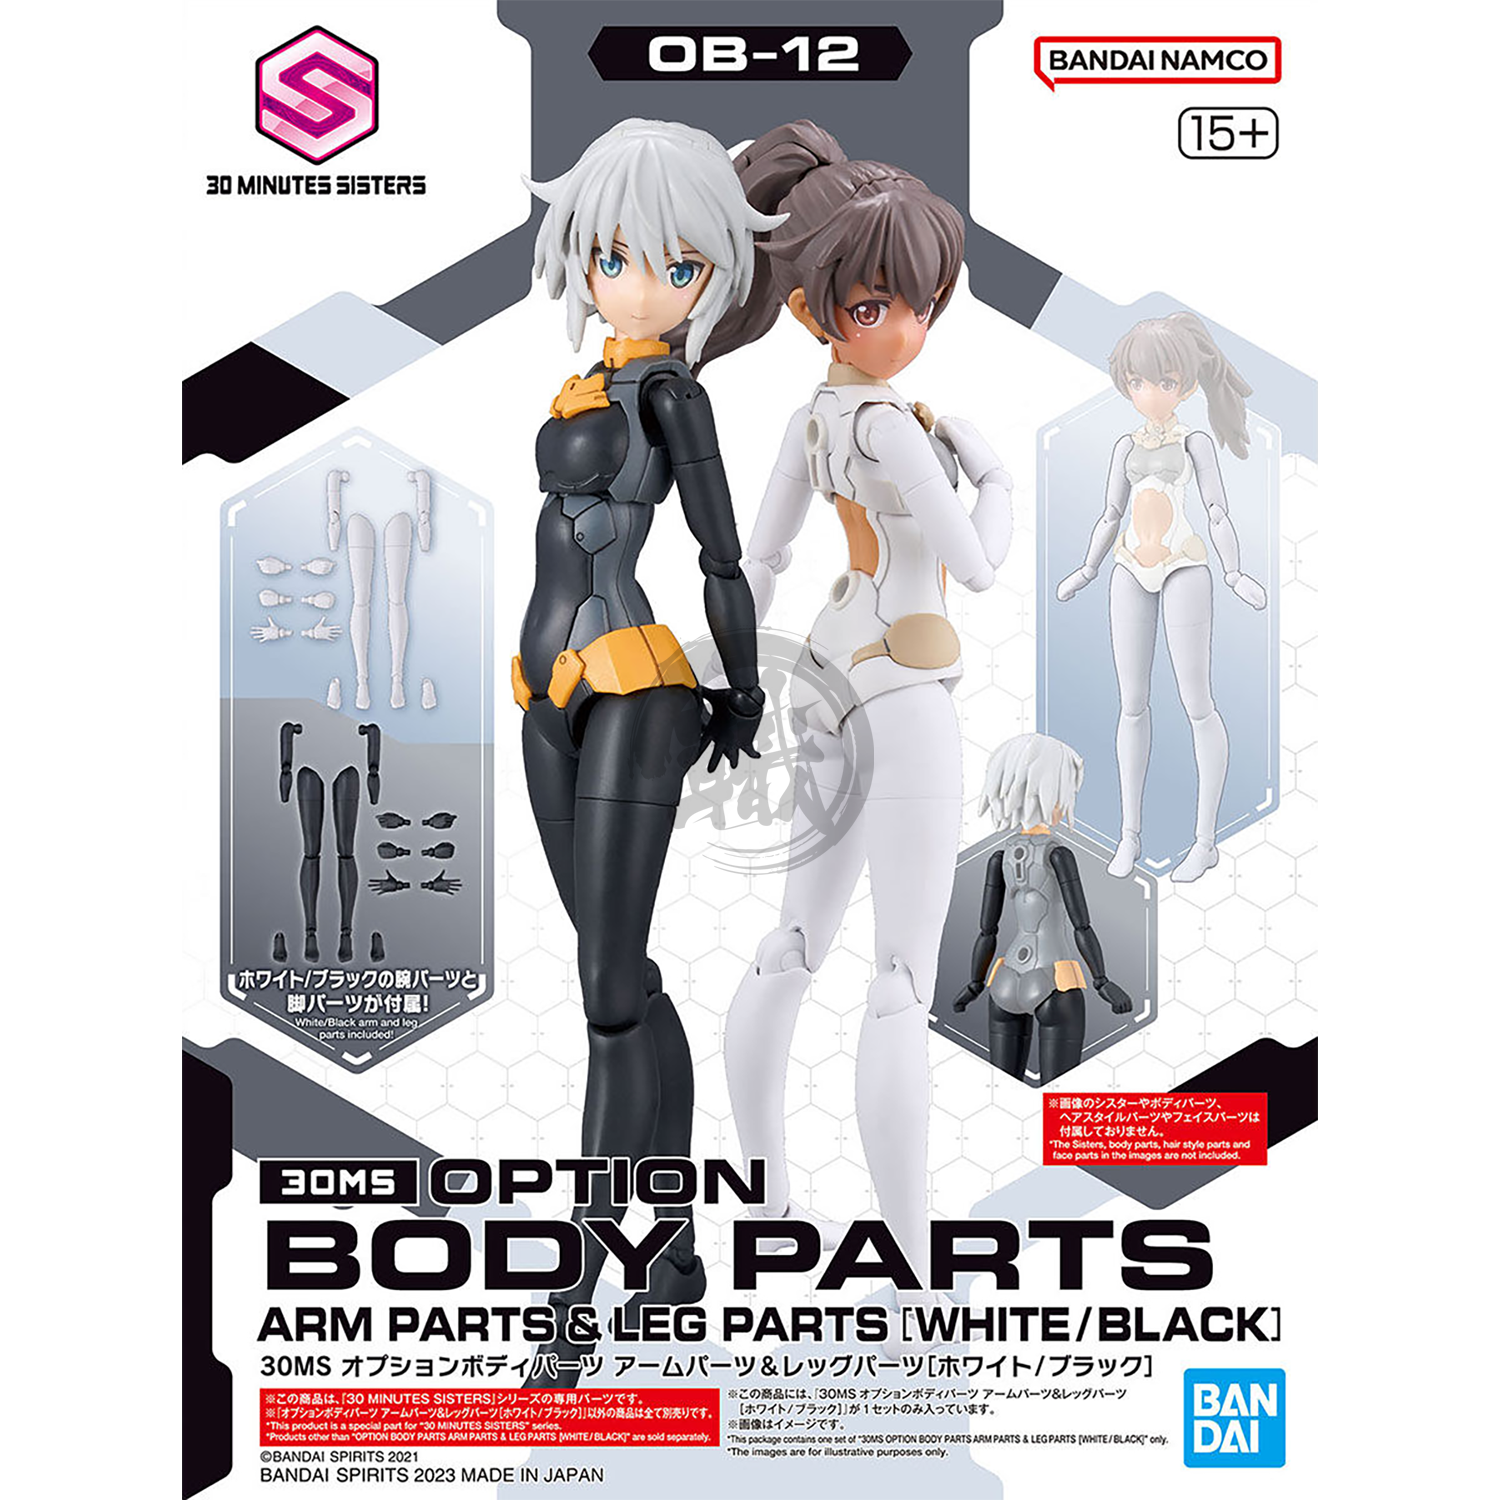 30MS Body Parts [Arm Parts & Leg Parts] [White/Black]